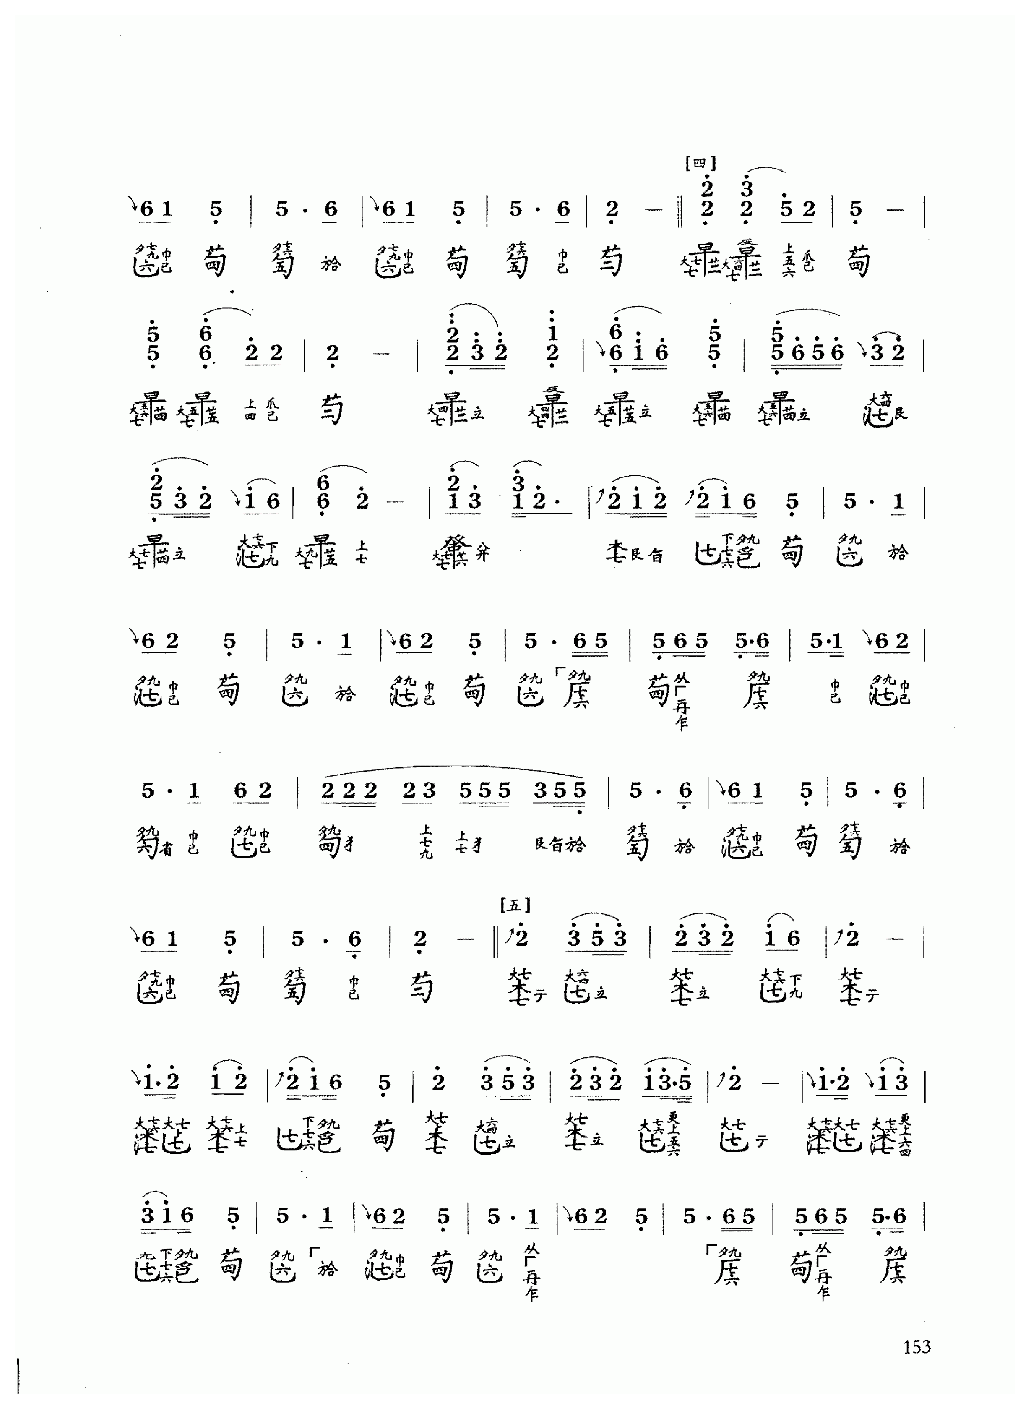 古琴乐曲谱 第六级《忆故人》据今虞琴刊1937年